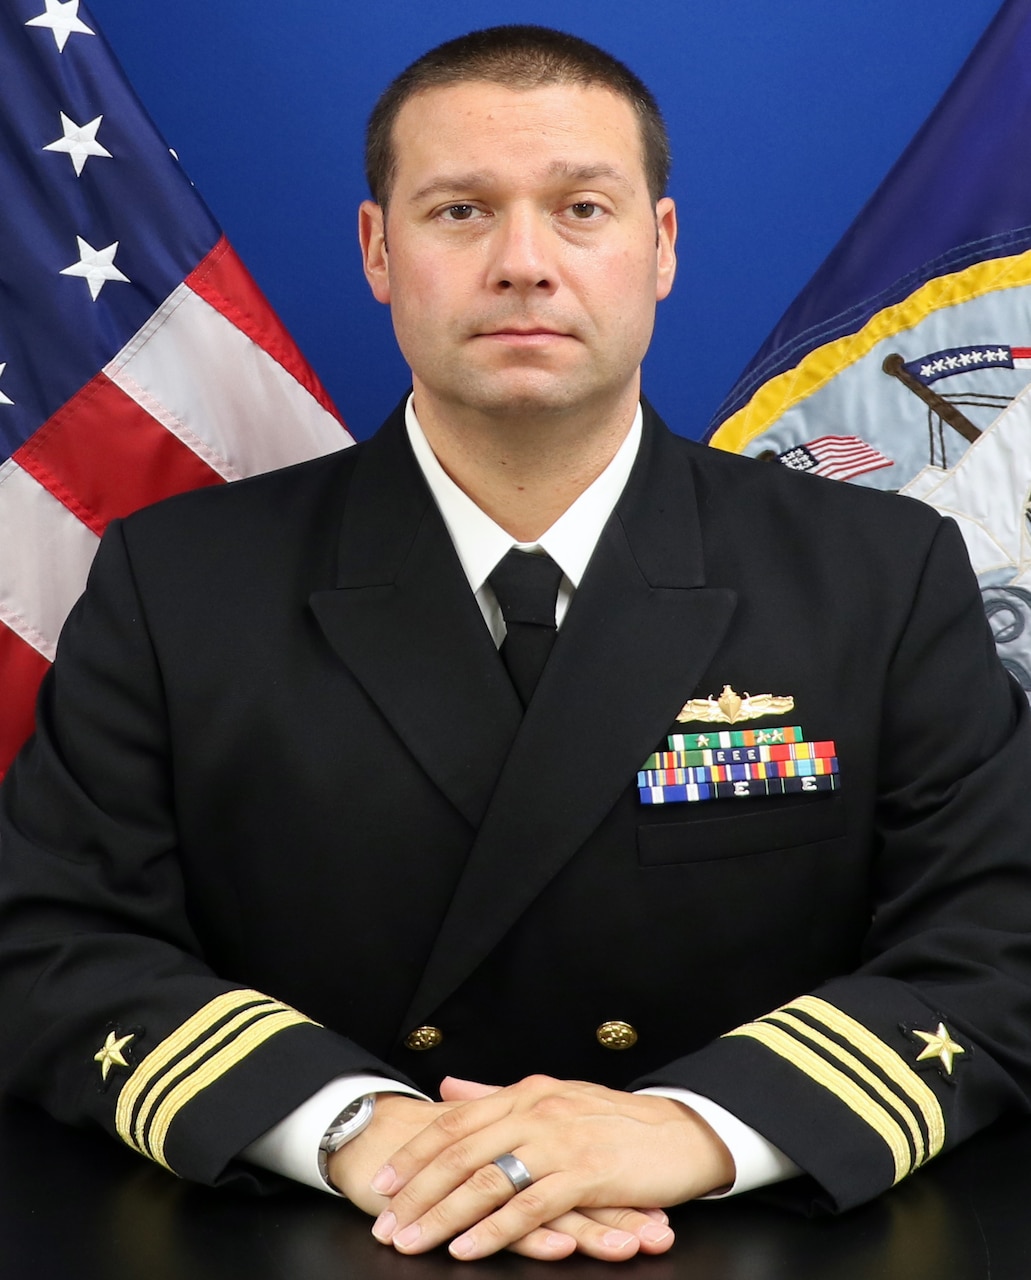 Commander William A. Gorum